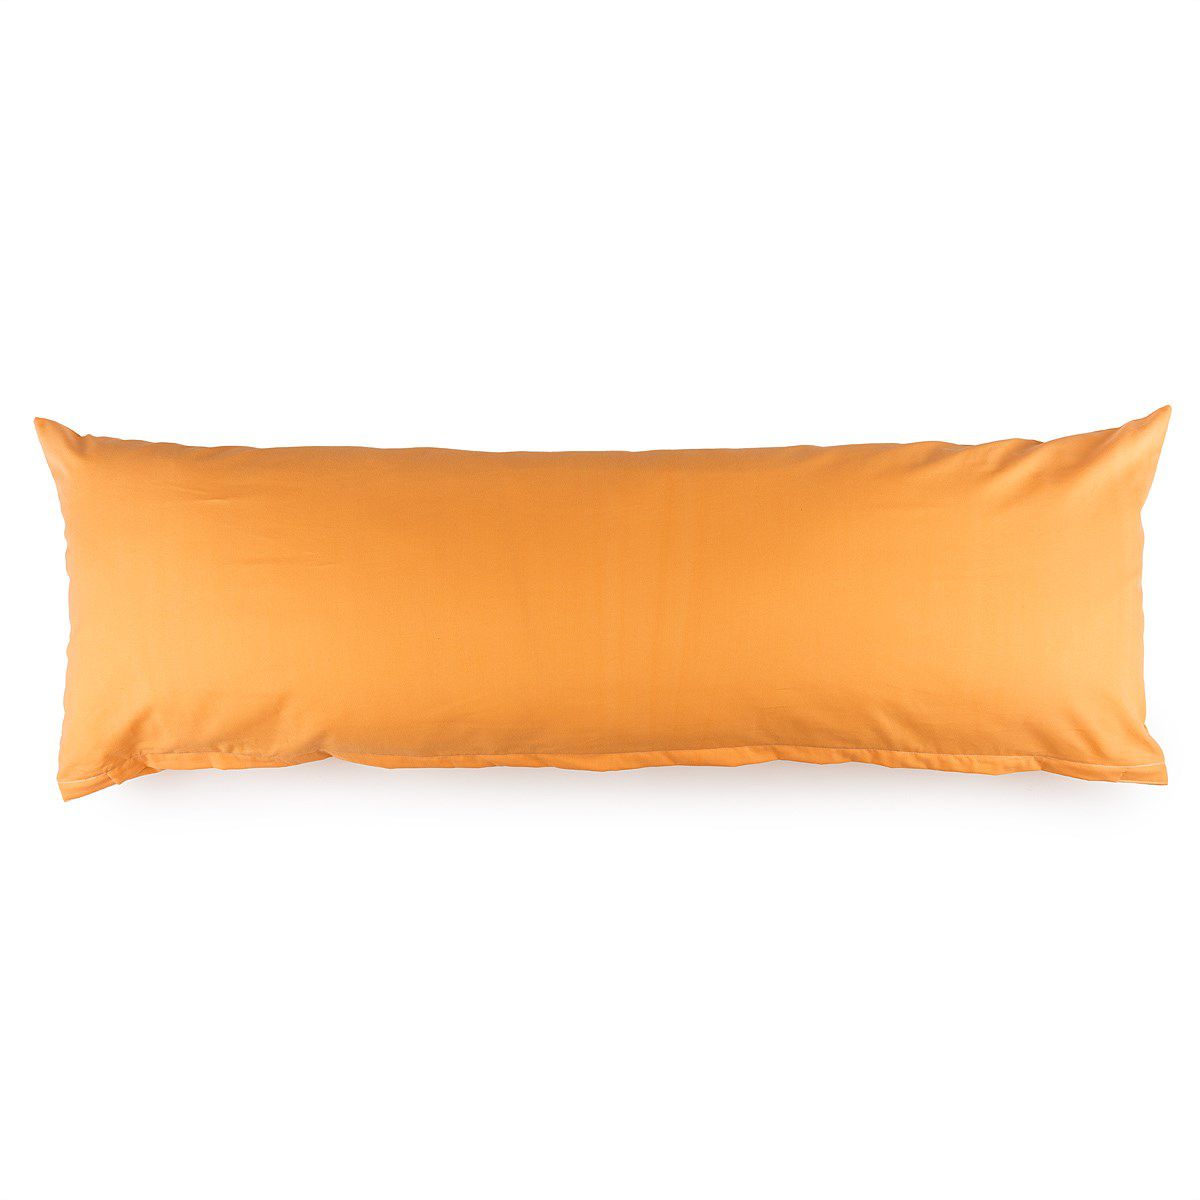 4Home Povlak na Relaxační polštář Náhradní manžel oranžová, 55 x 180 cm - 4home.cz